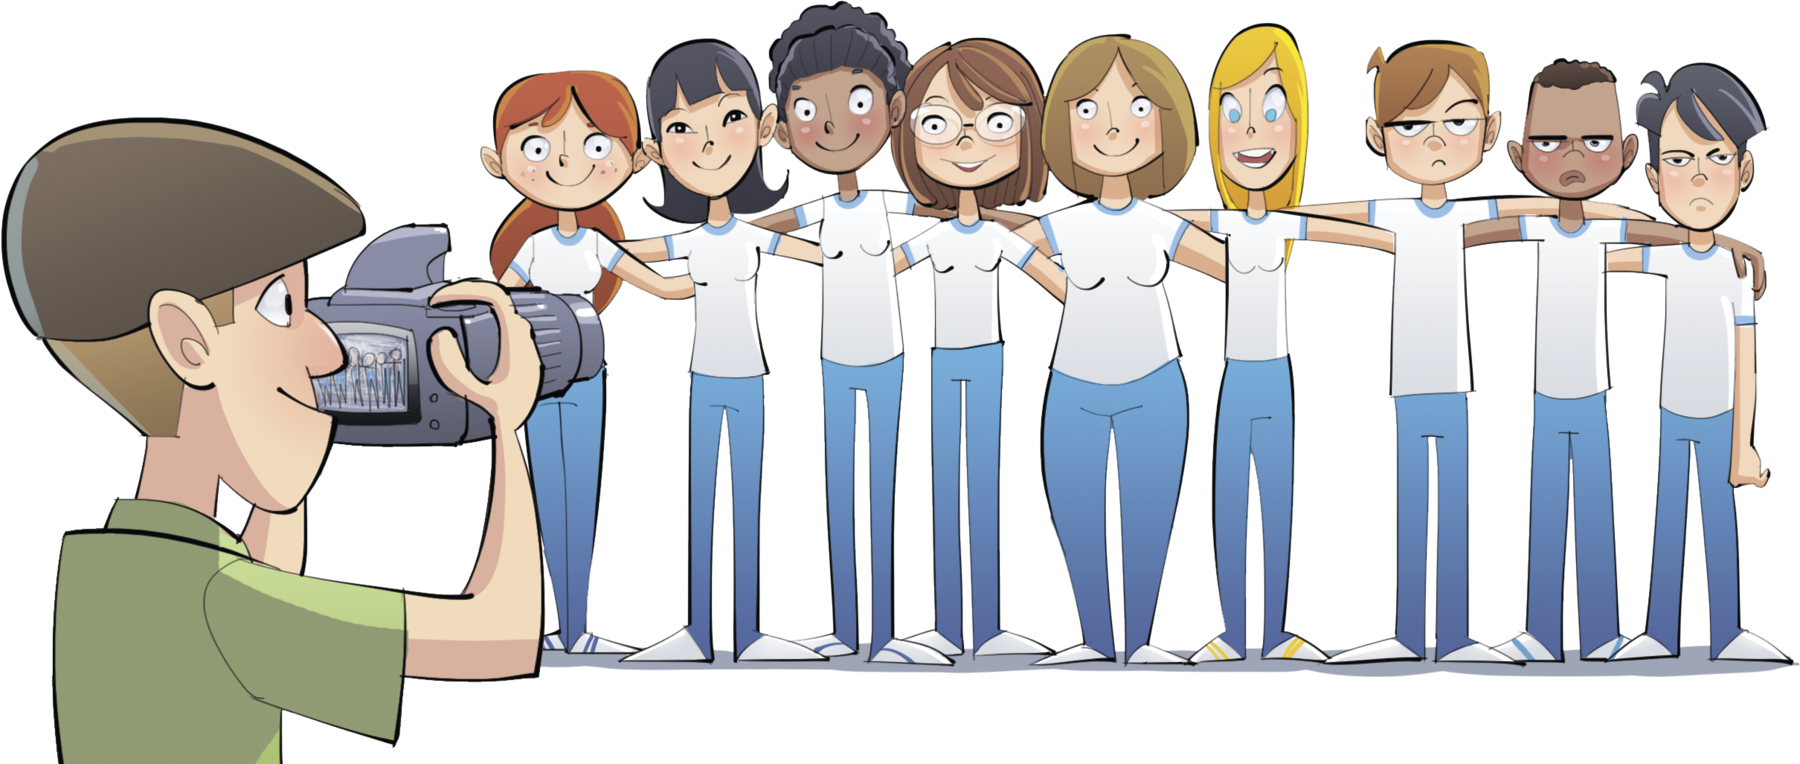 Ilustração. Nove jovens de camiseta branca e calça azul estão abraçados lado a lado. À frente deles, um homem tira uma foto